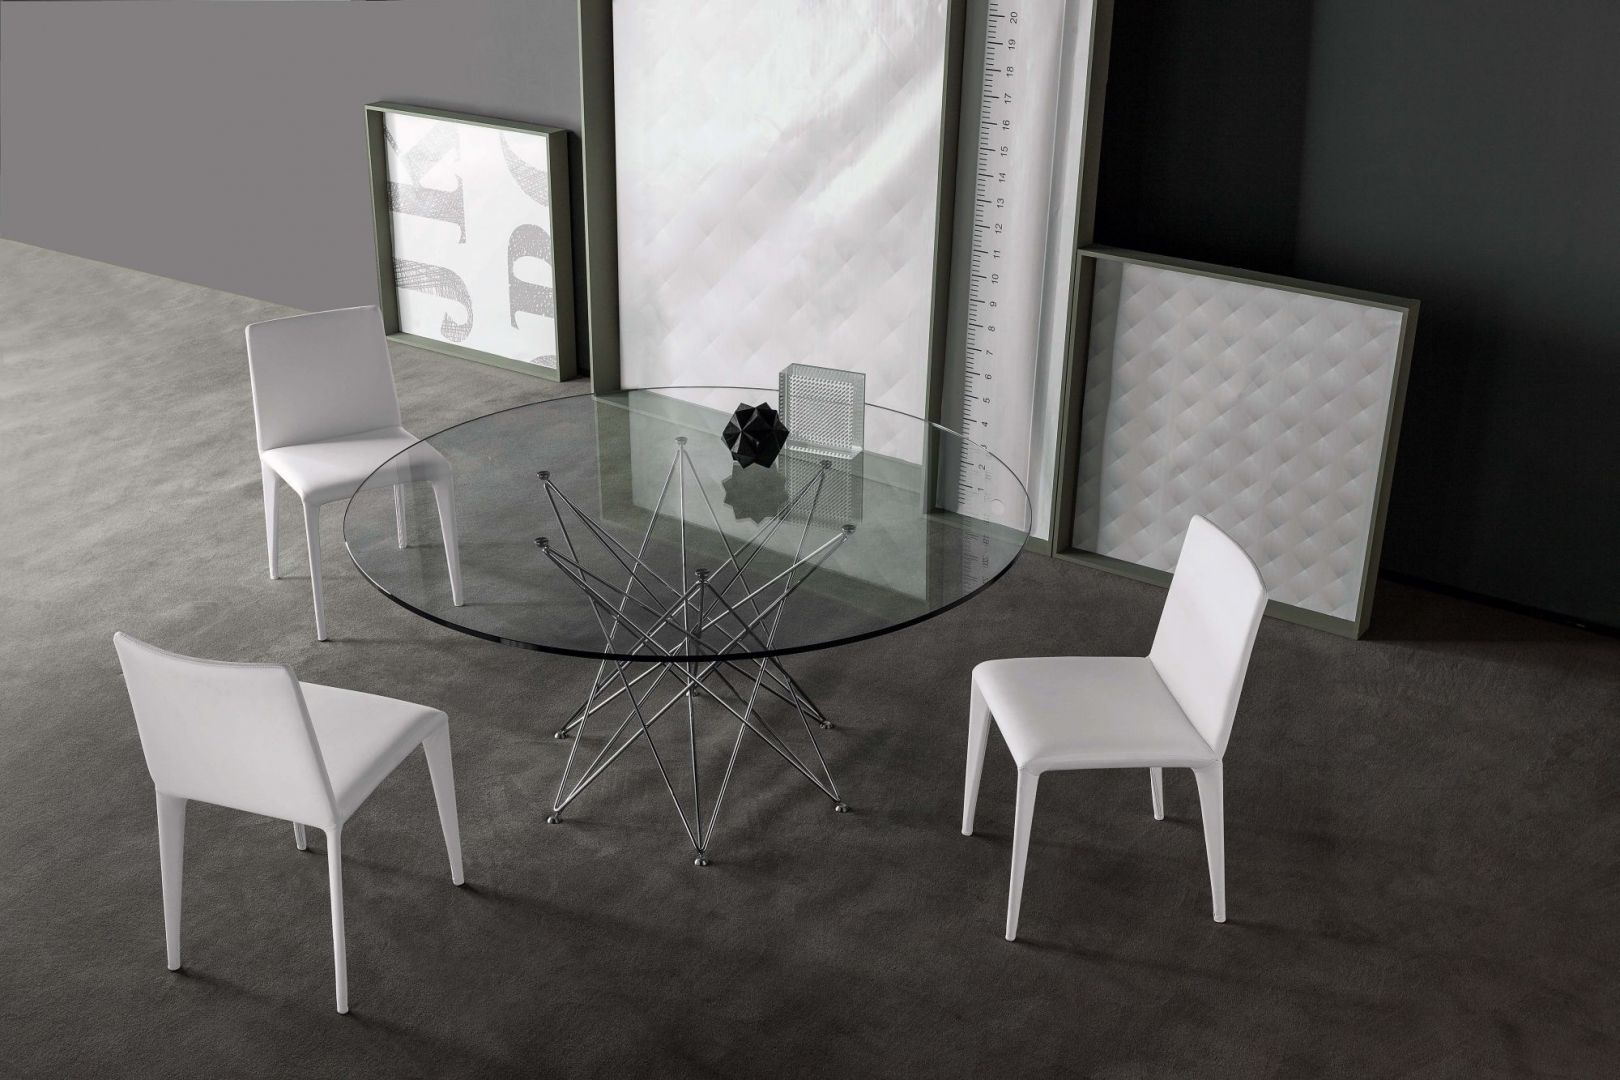 Okrągły stół Octa ze szklanym blatem, zamiast nóg ma delikatną pajęczynę wykonaną ze stalowych prętów. Fot. Bonaldo